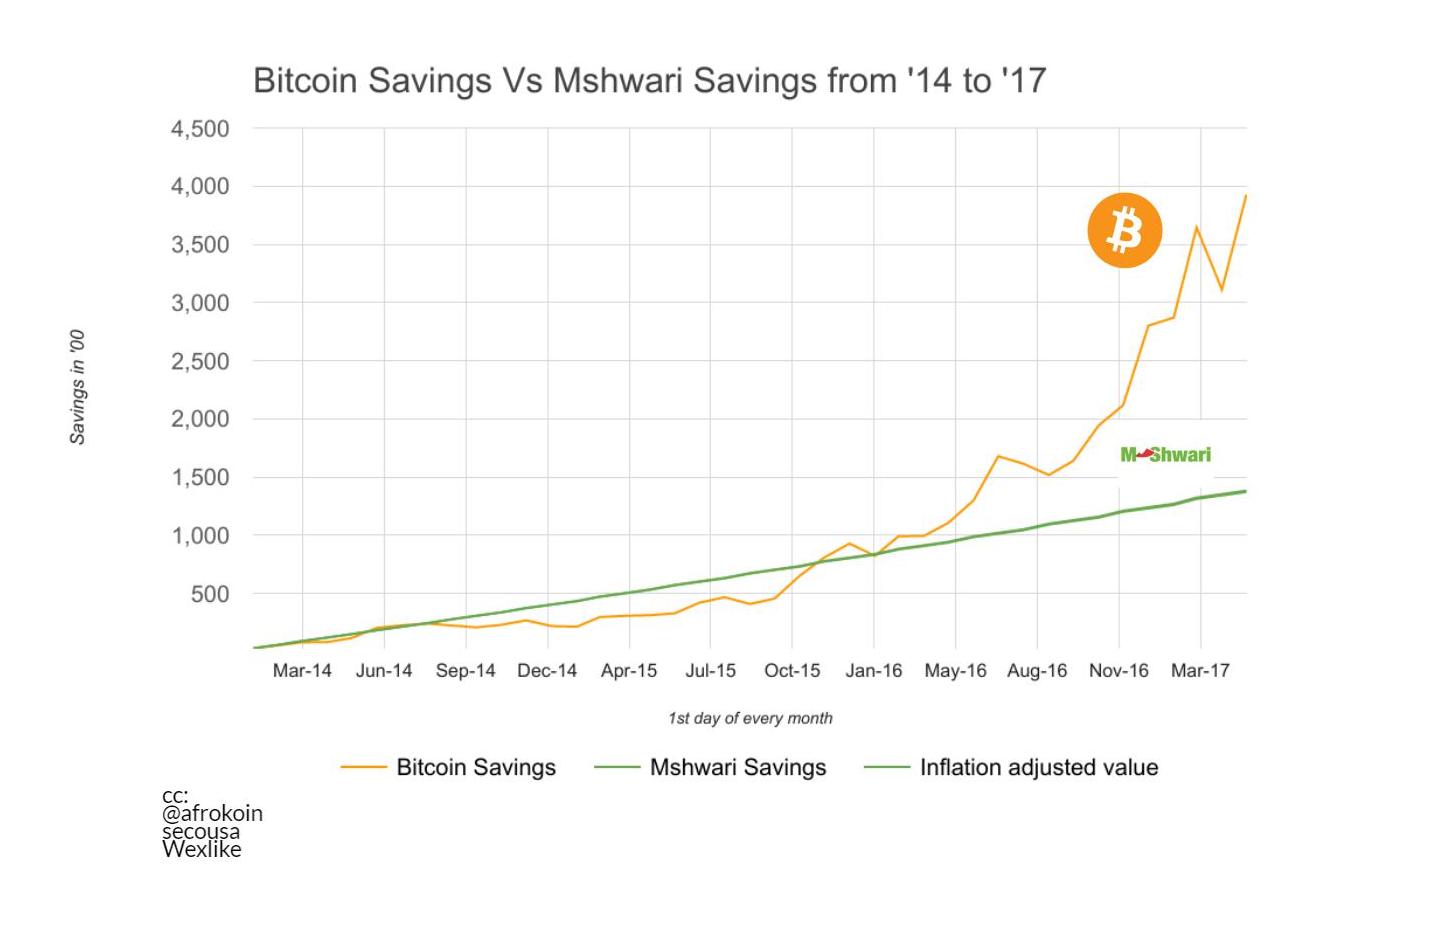 Bitcoin savings vs Mshwari savings boom